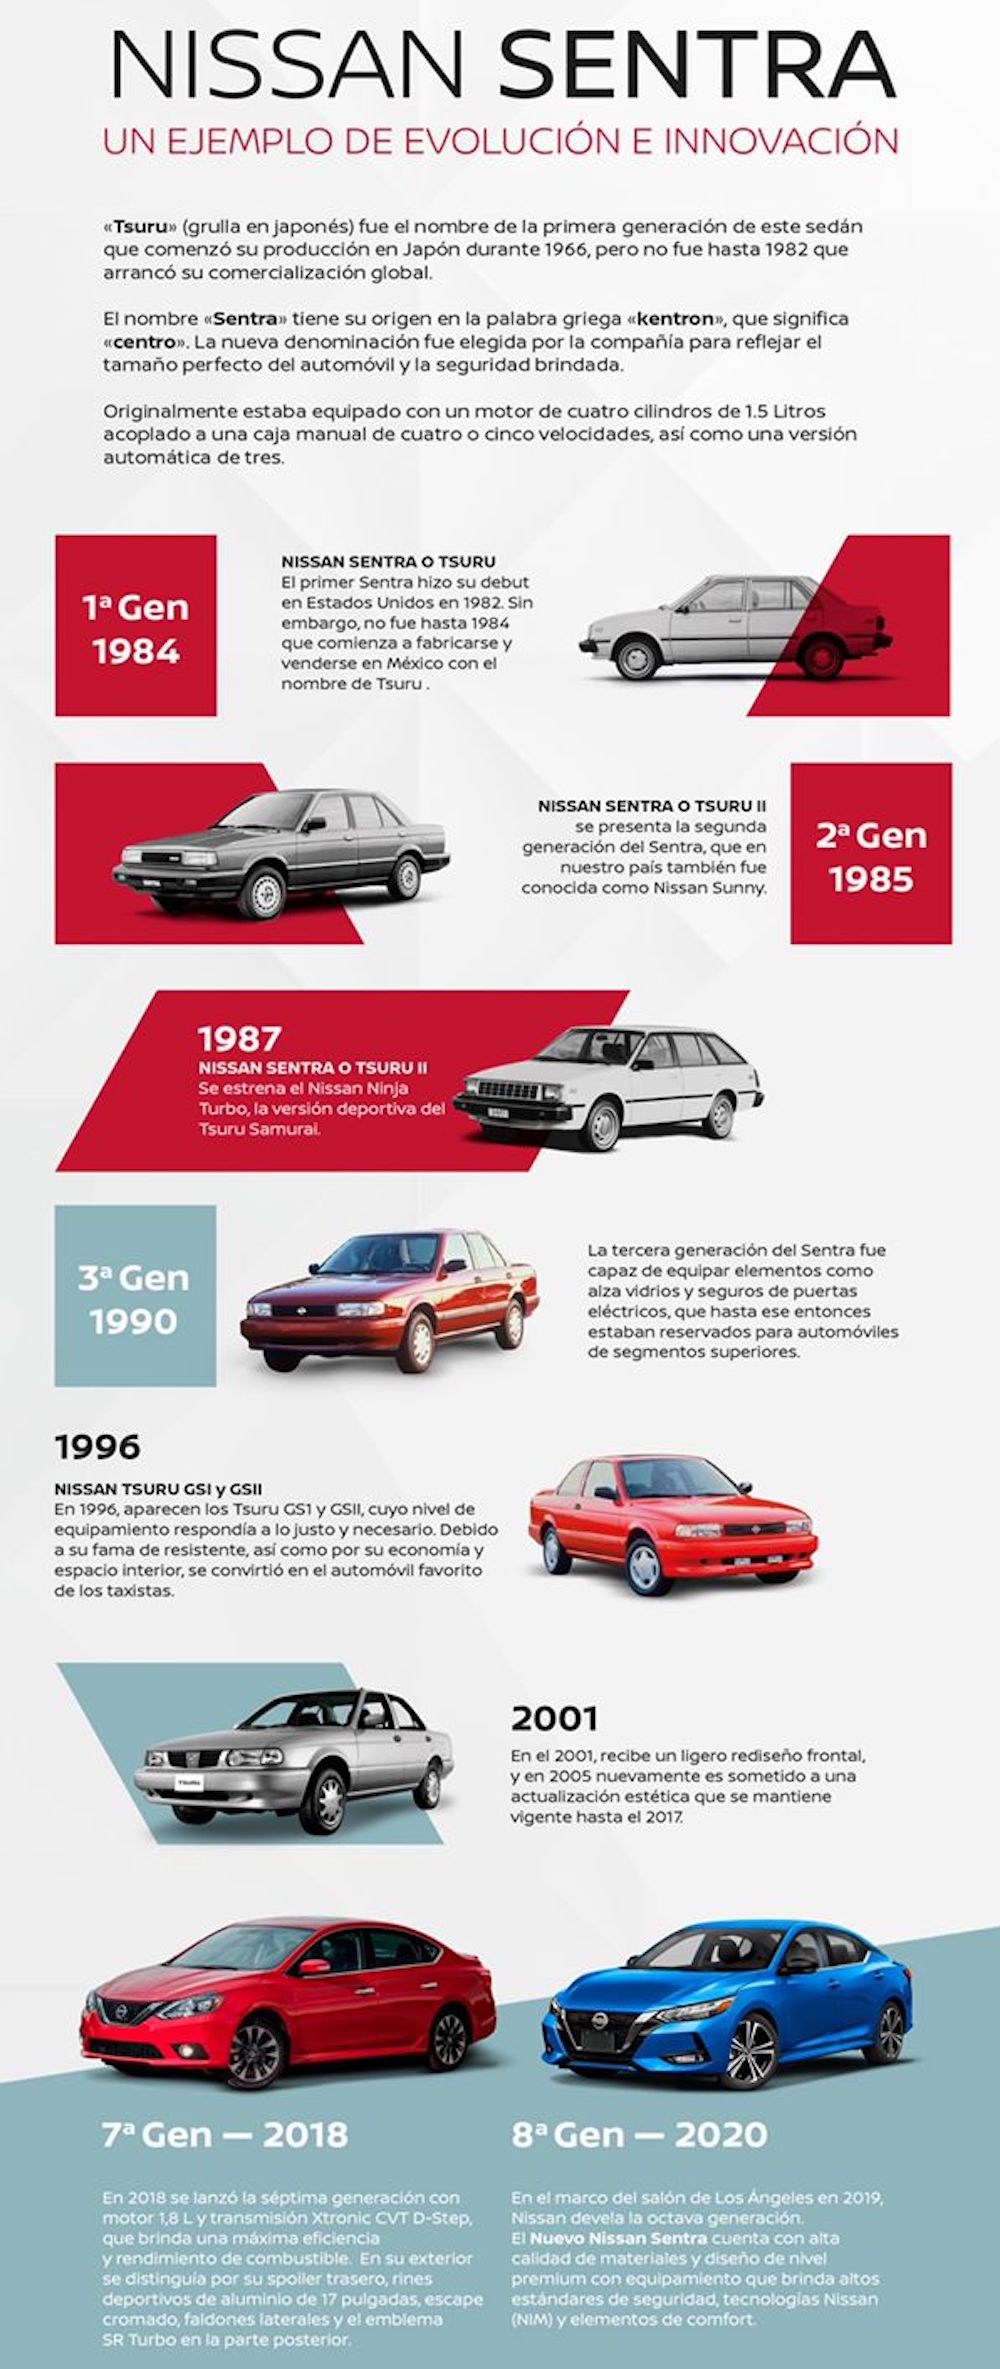 Nissan Sentra: Un ejemplo de evolución e innovación